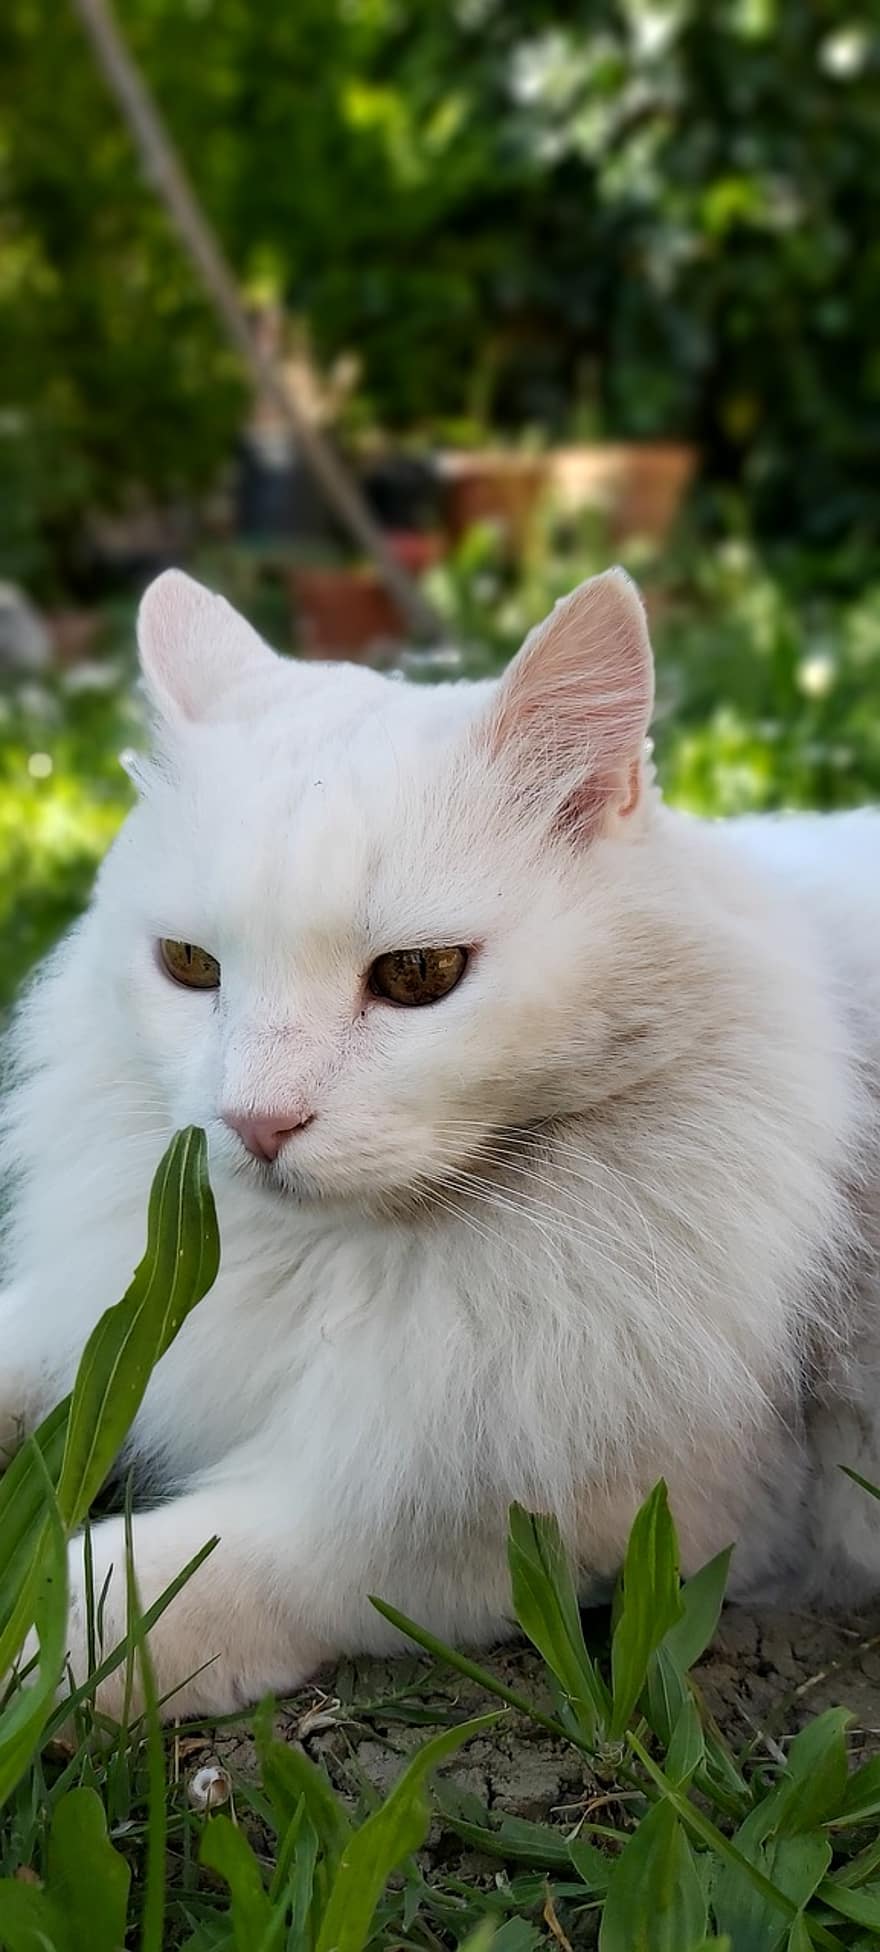 hvid kat, dyr, kat, natur, feline, øjne, se, have, forår